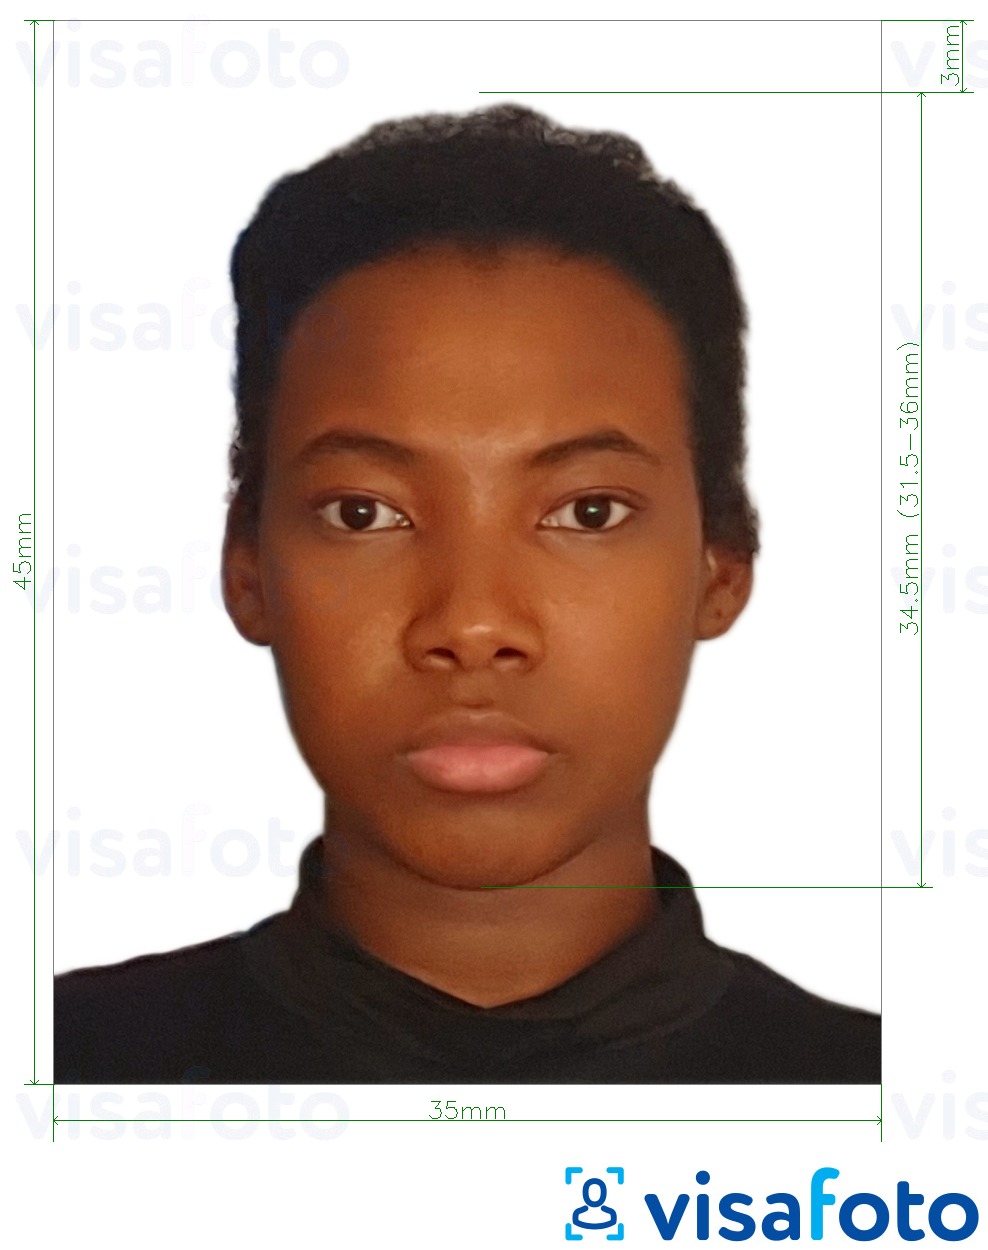 ຕົວຢ່າງຮູບພາບສໍາລັບ ປະເທດ Guyana passport 45x35 ມມ (17.7 x 138 ນິ້ວ) ພ້ອມມີຂໍ້ກໍານົດຂະໜາດທີ່ແນ່ນອນ